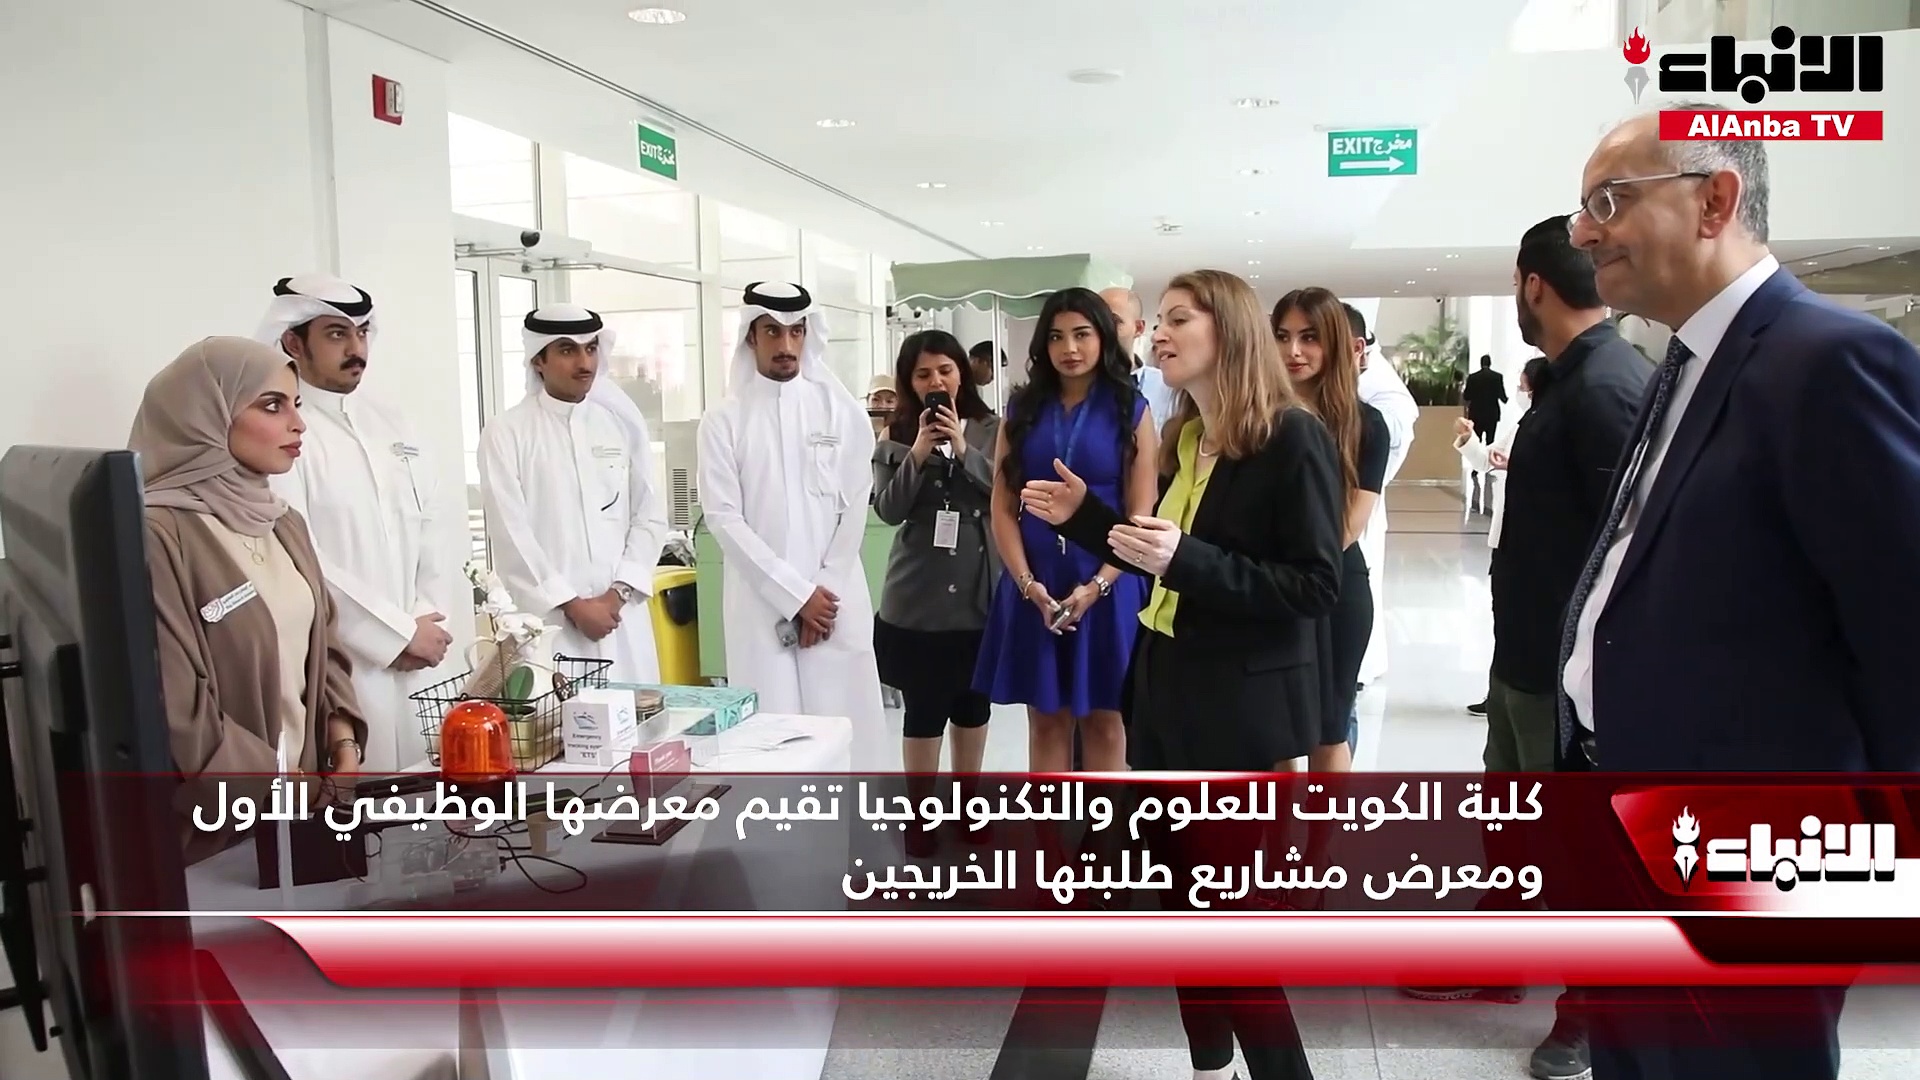 كلية الكويت للعلوم والتكنولوجيا تقيم معرضها الوظيفي الأول ومعرض مشاريع طلبتها الخريجين